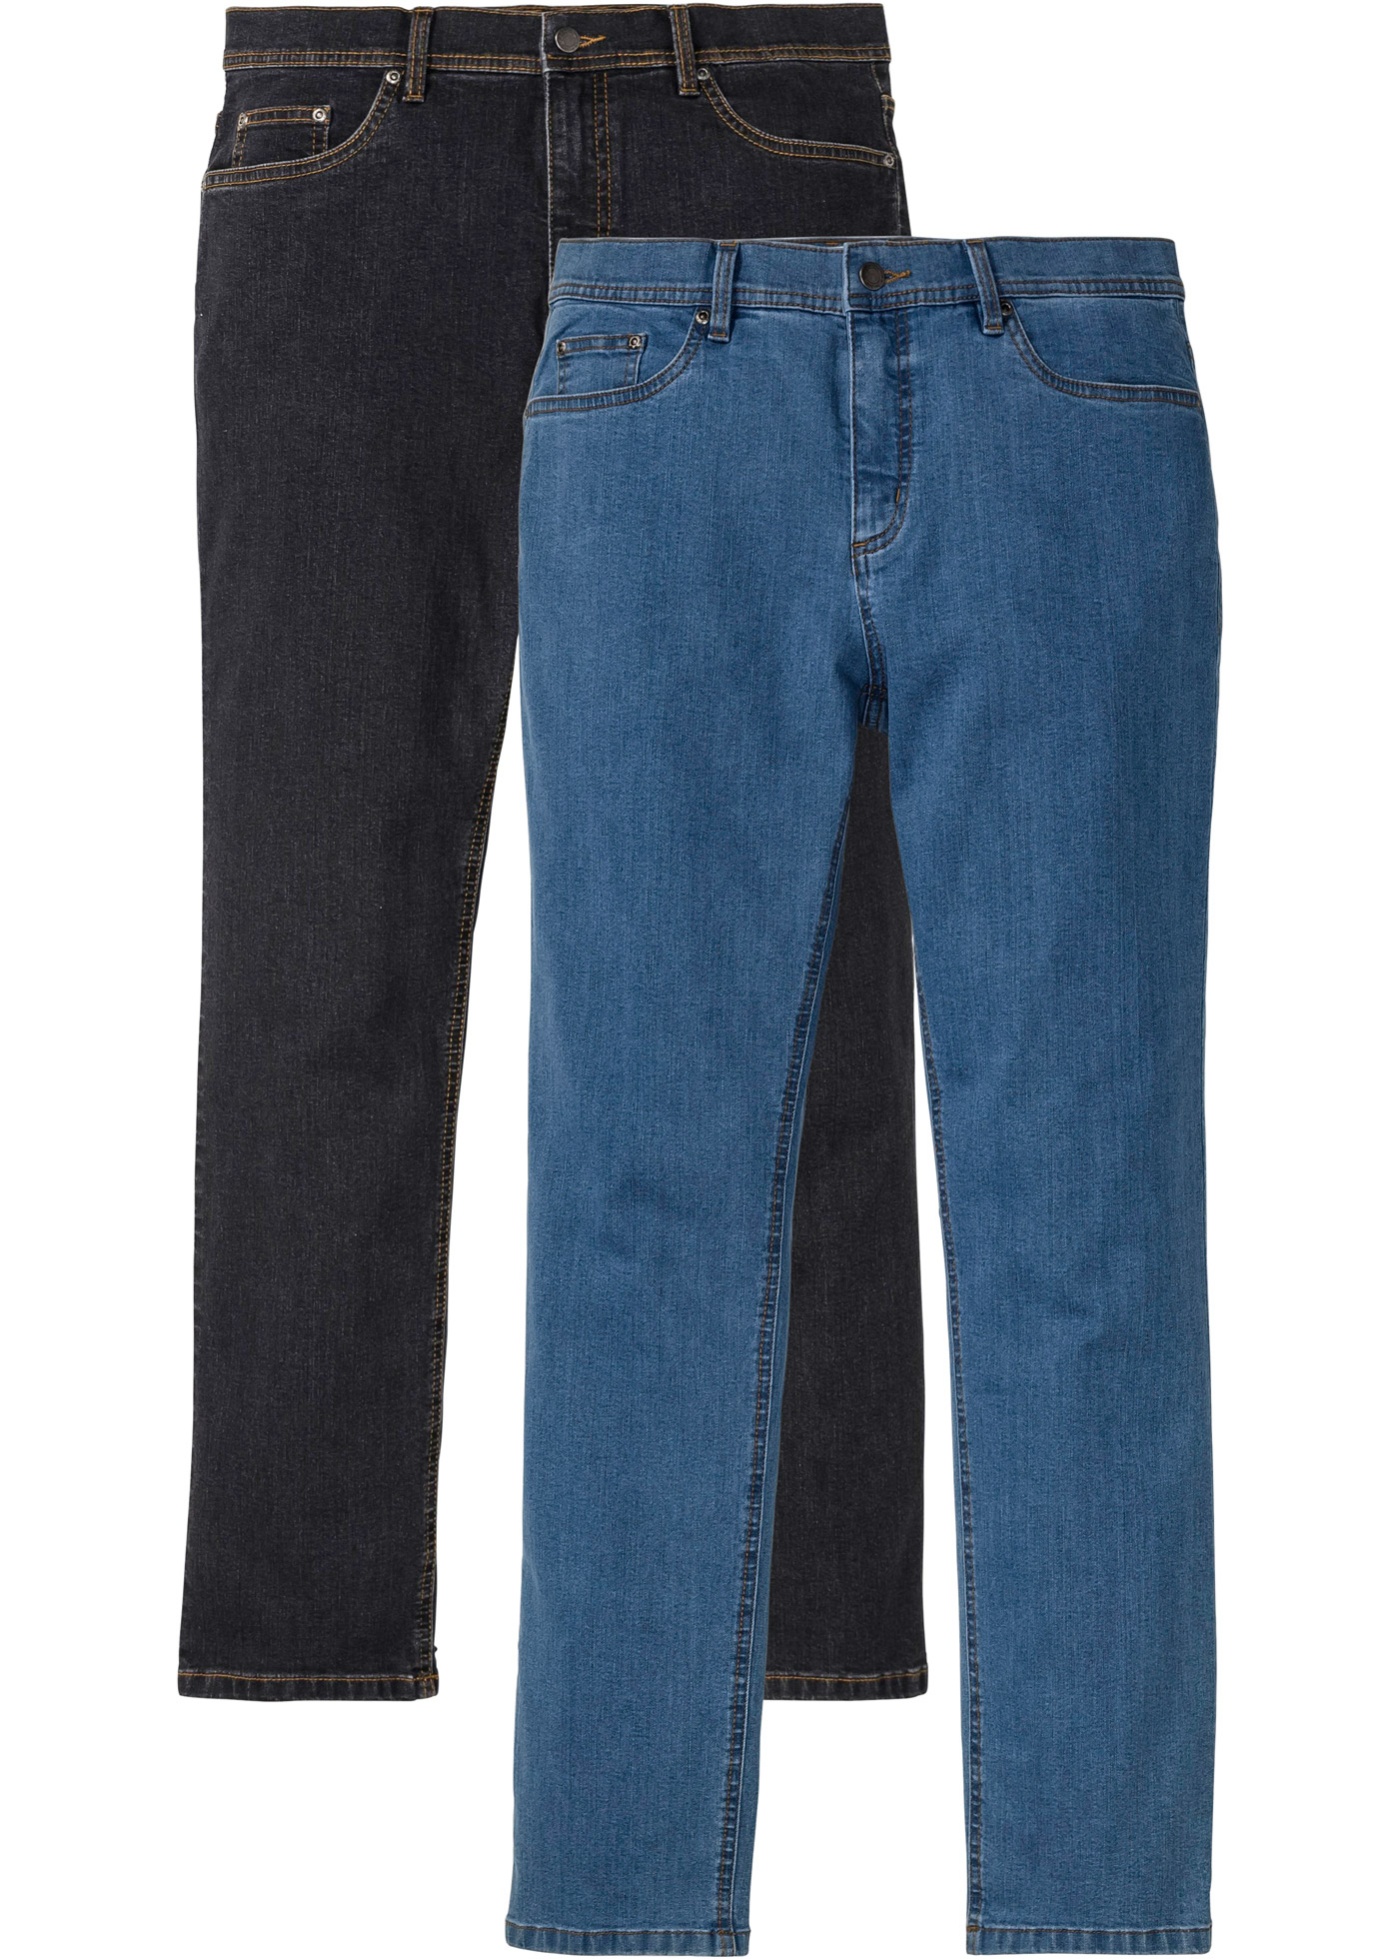 Strečové džínsy Regular Fit, rovné (2 ks v balení)